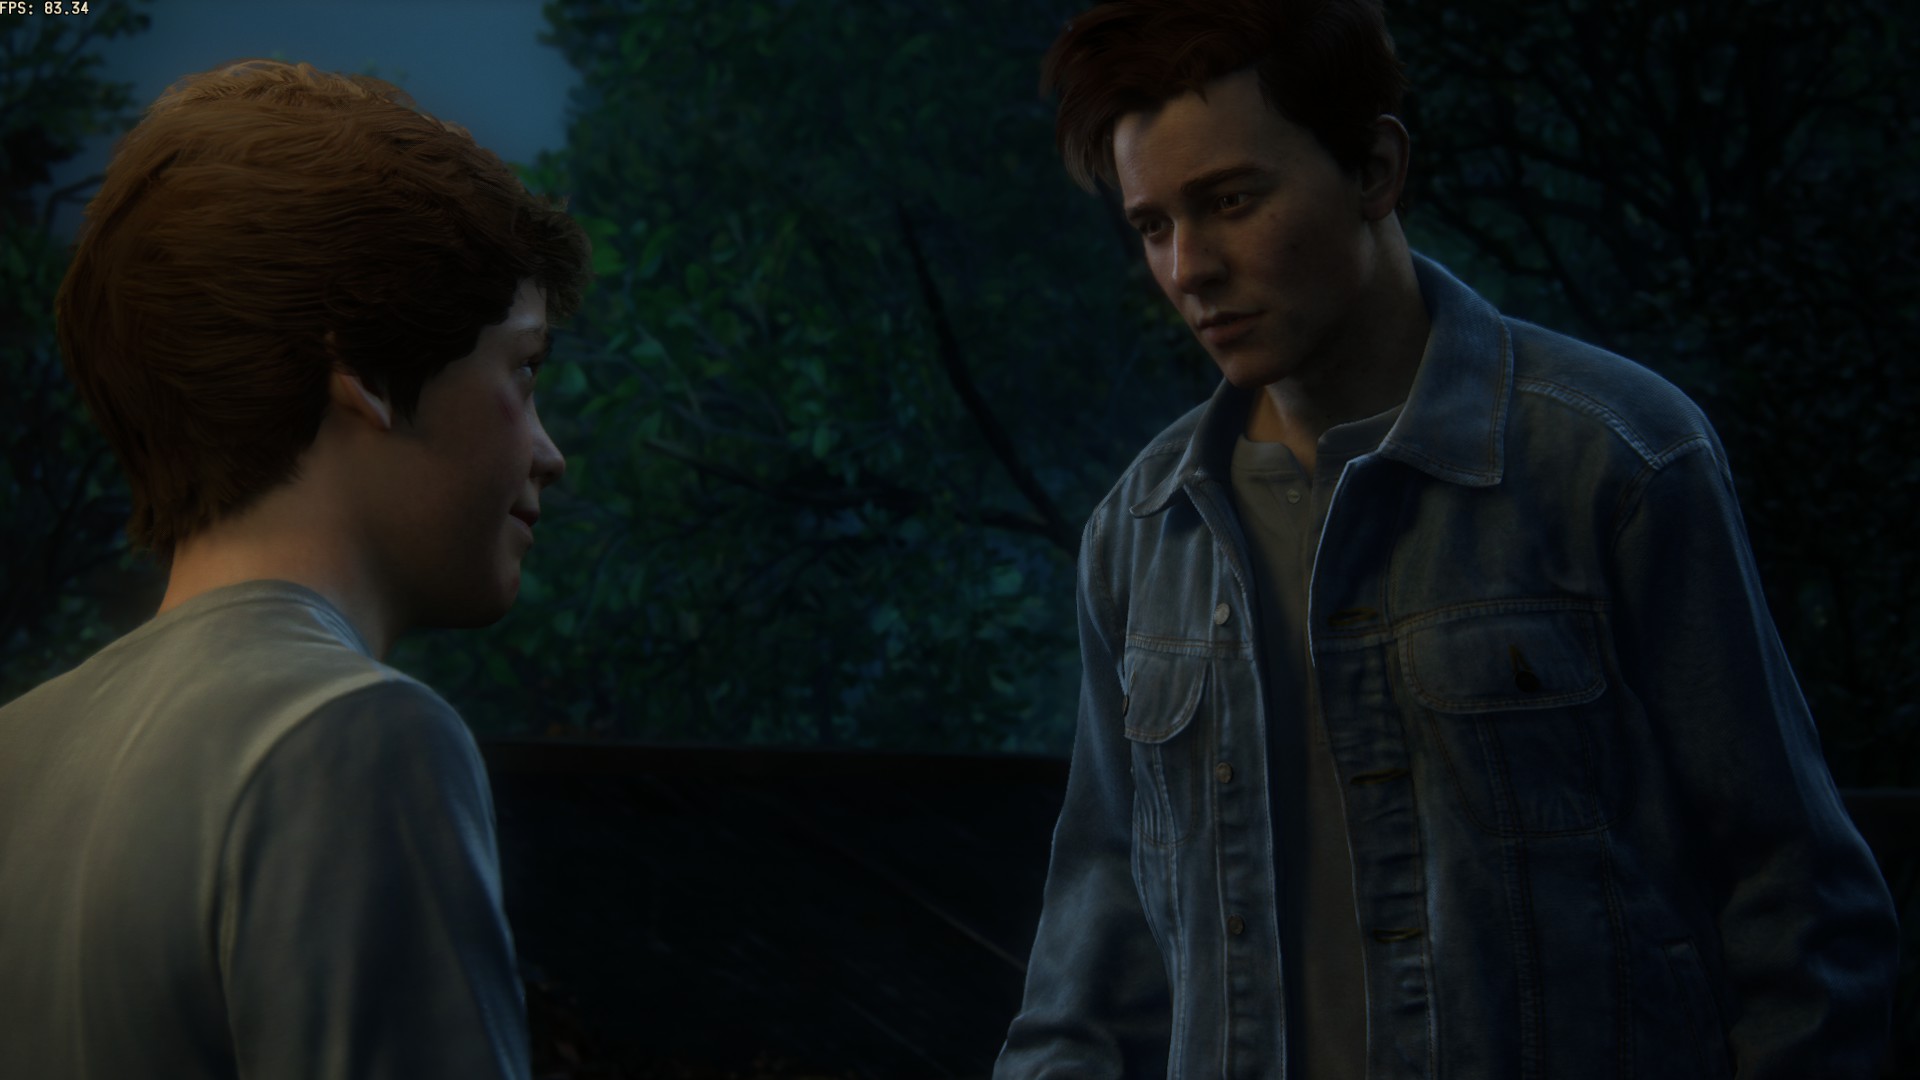 Análise de Uncharted: Legado dos Ladrões (PC)